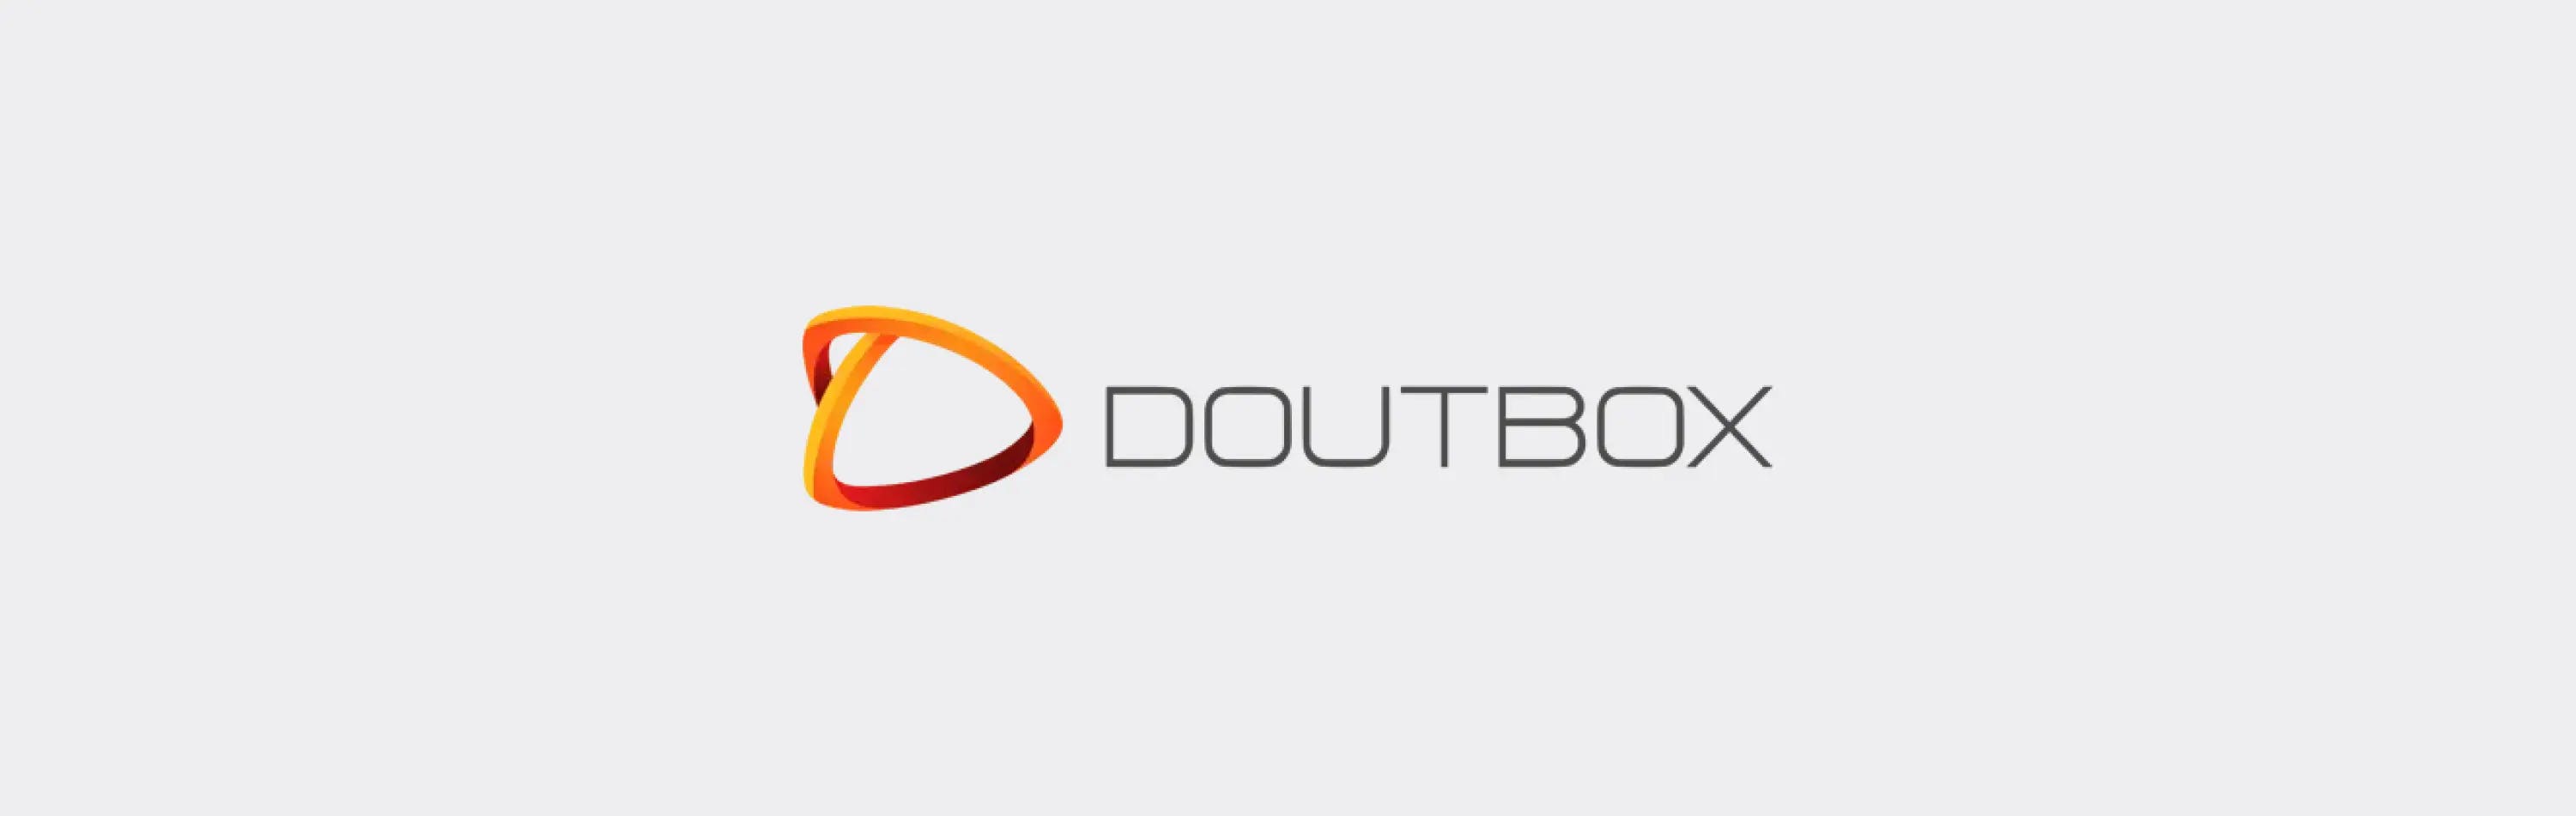 Doutbox